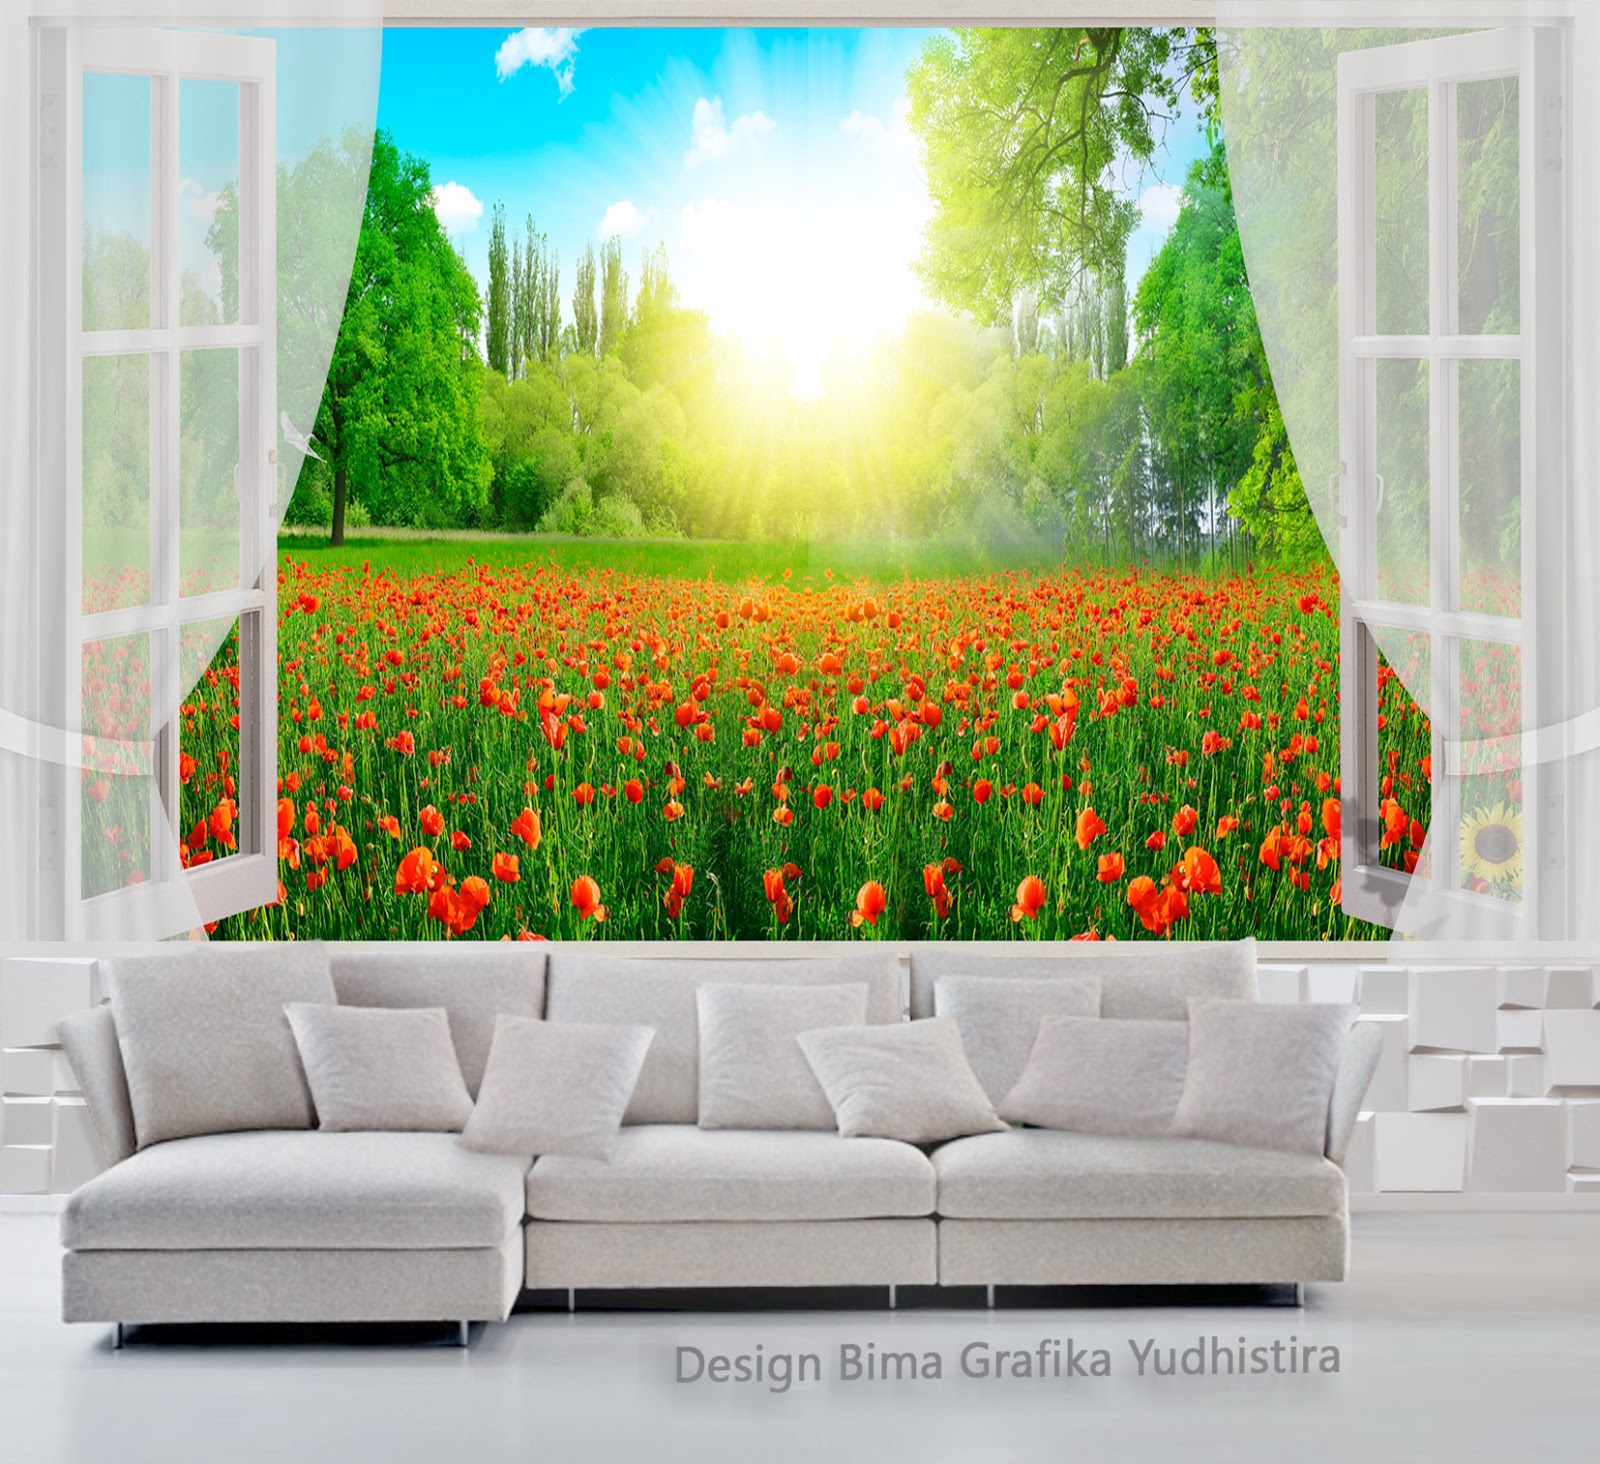 fondo de pantalla dinding 3d,naturaleza,paisaje natural,verde,arte moderno,mural